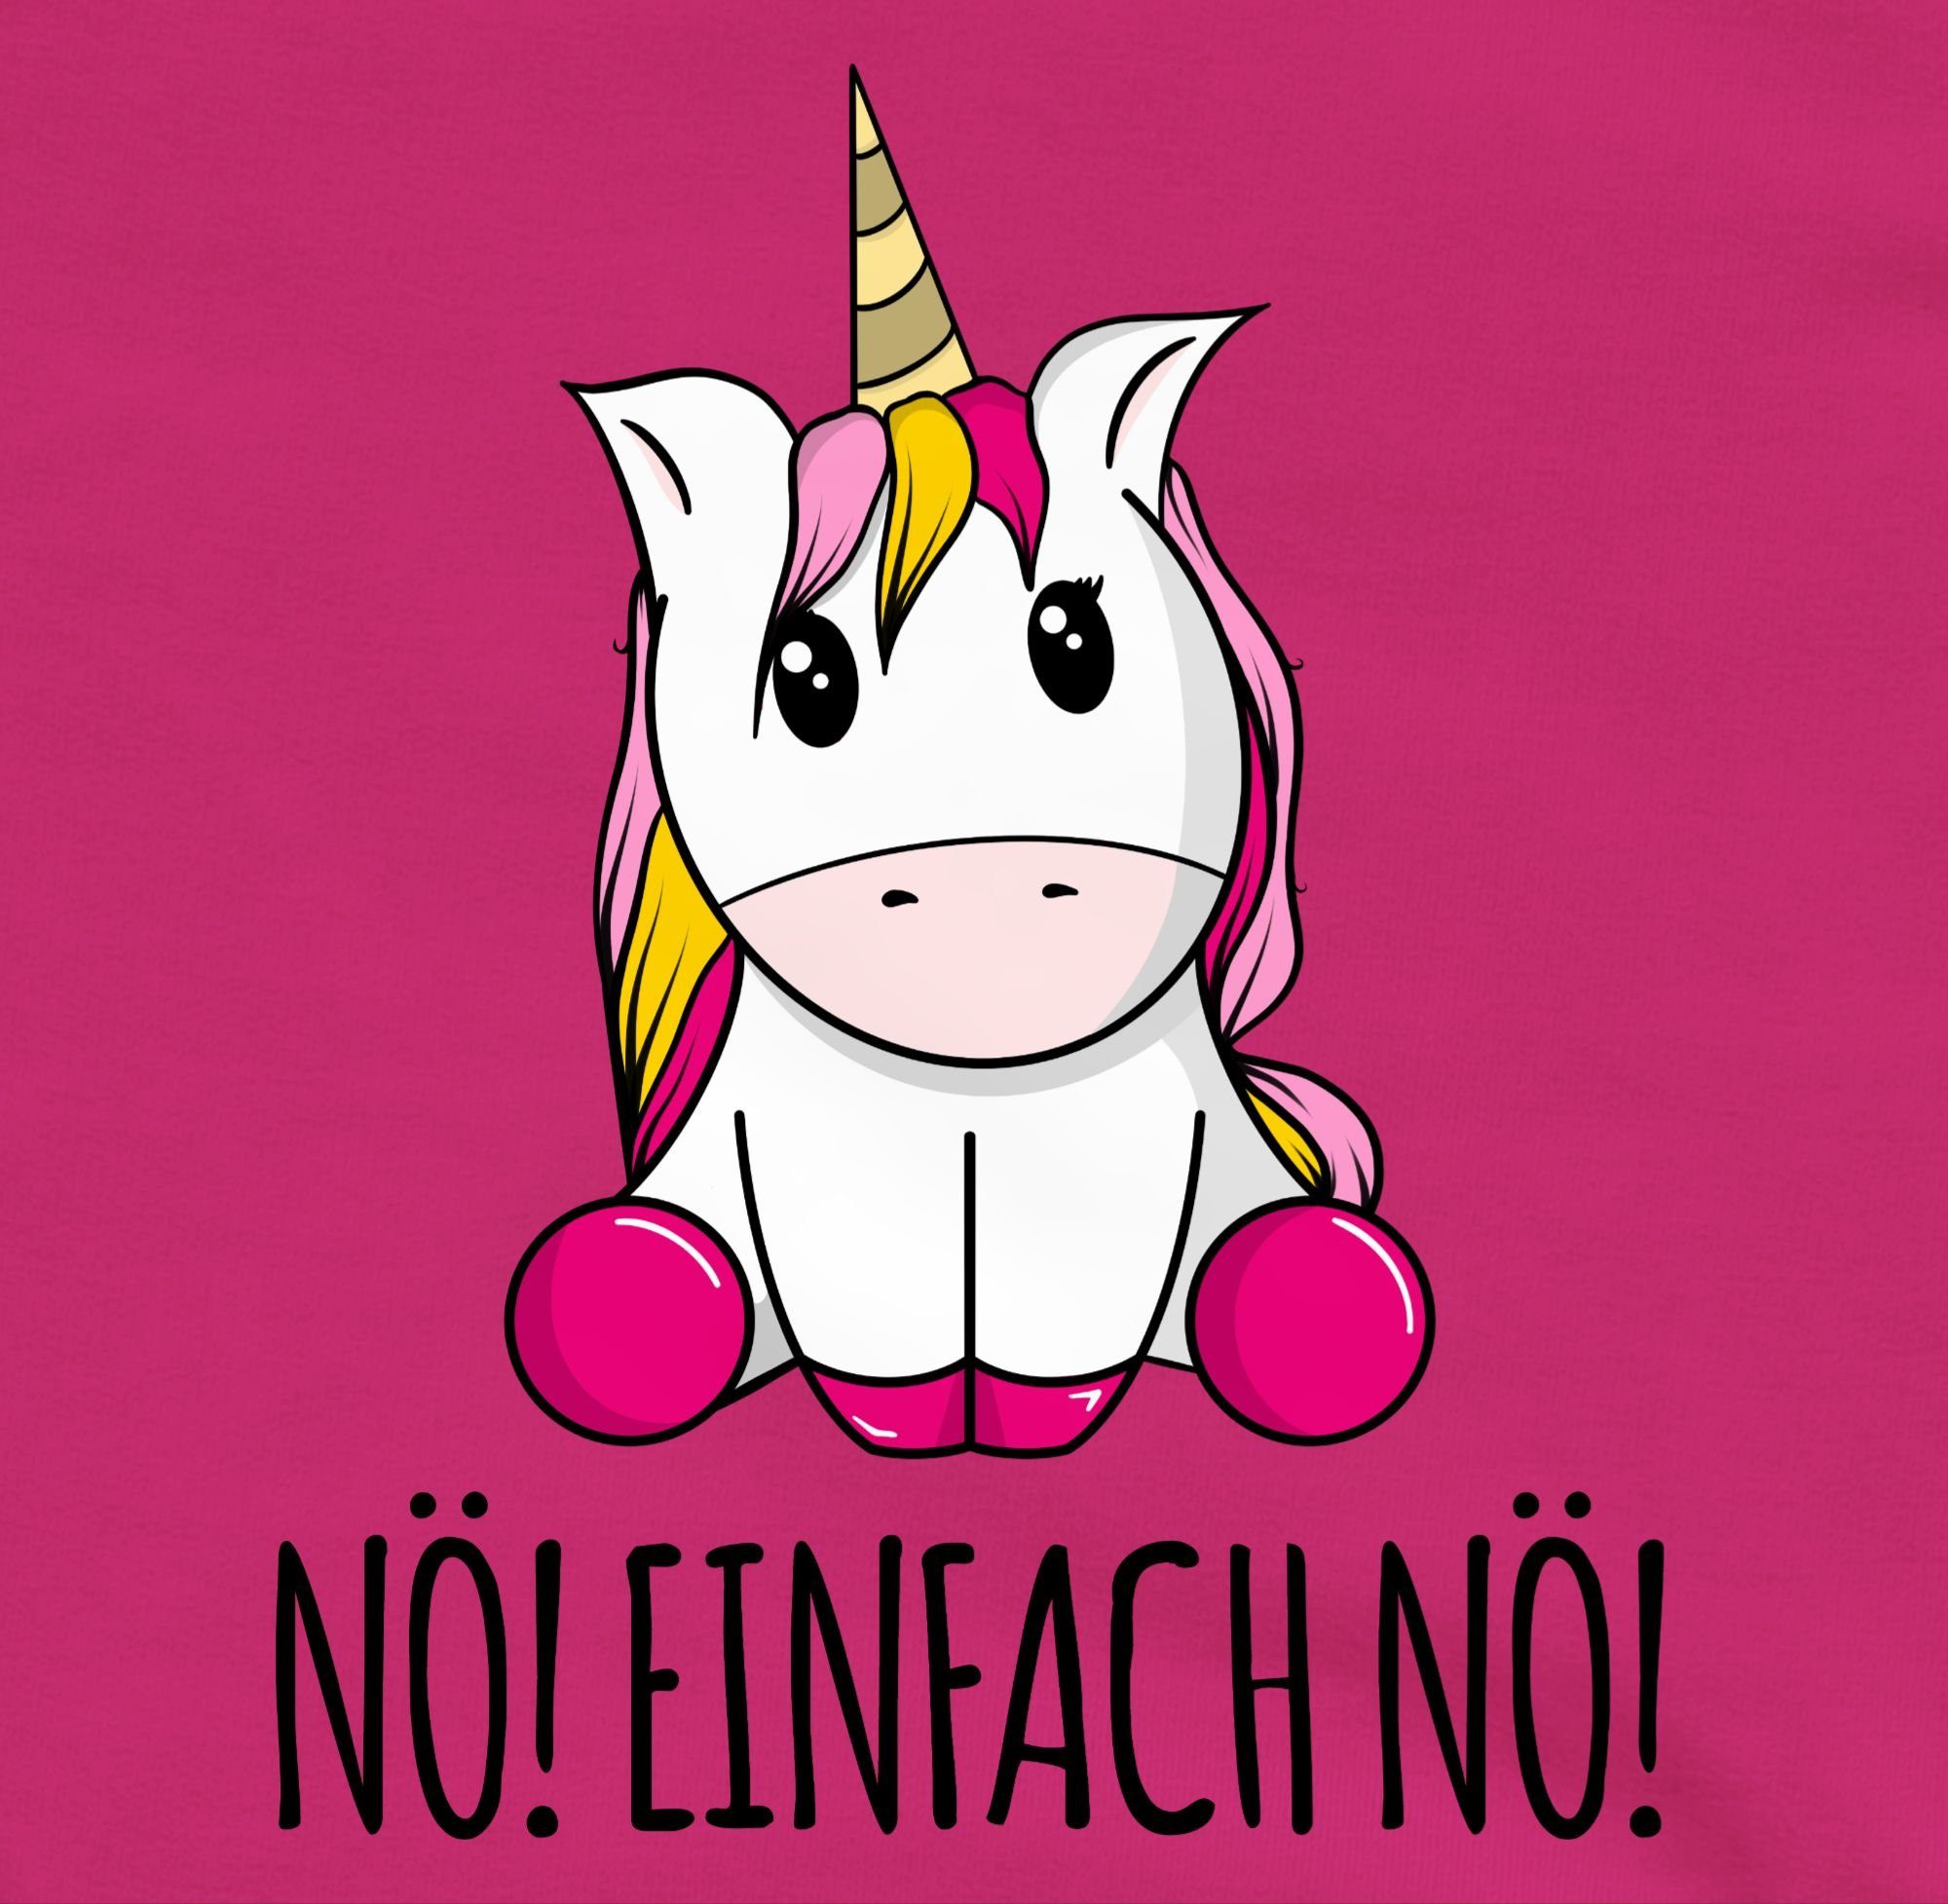 Shirtracer Sweatshirt Sprüche Einhorn Lustig fragst Einfach 1 Nein Bevor Kinder Fuchsia Unicorn Nö! Du Nö! Statement